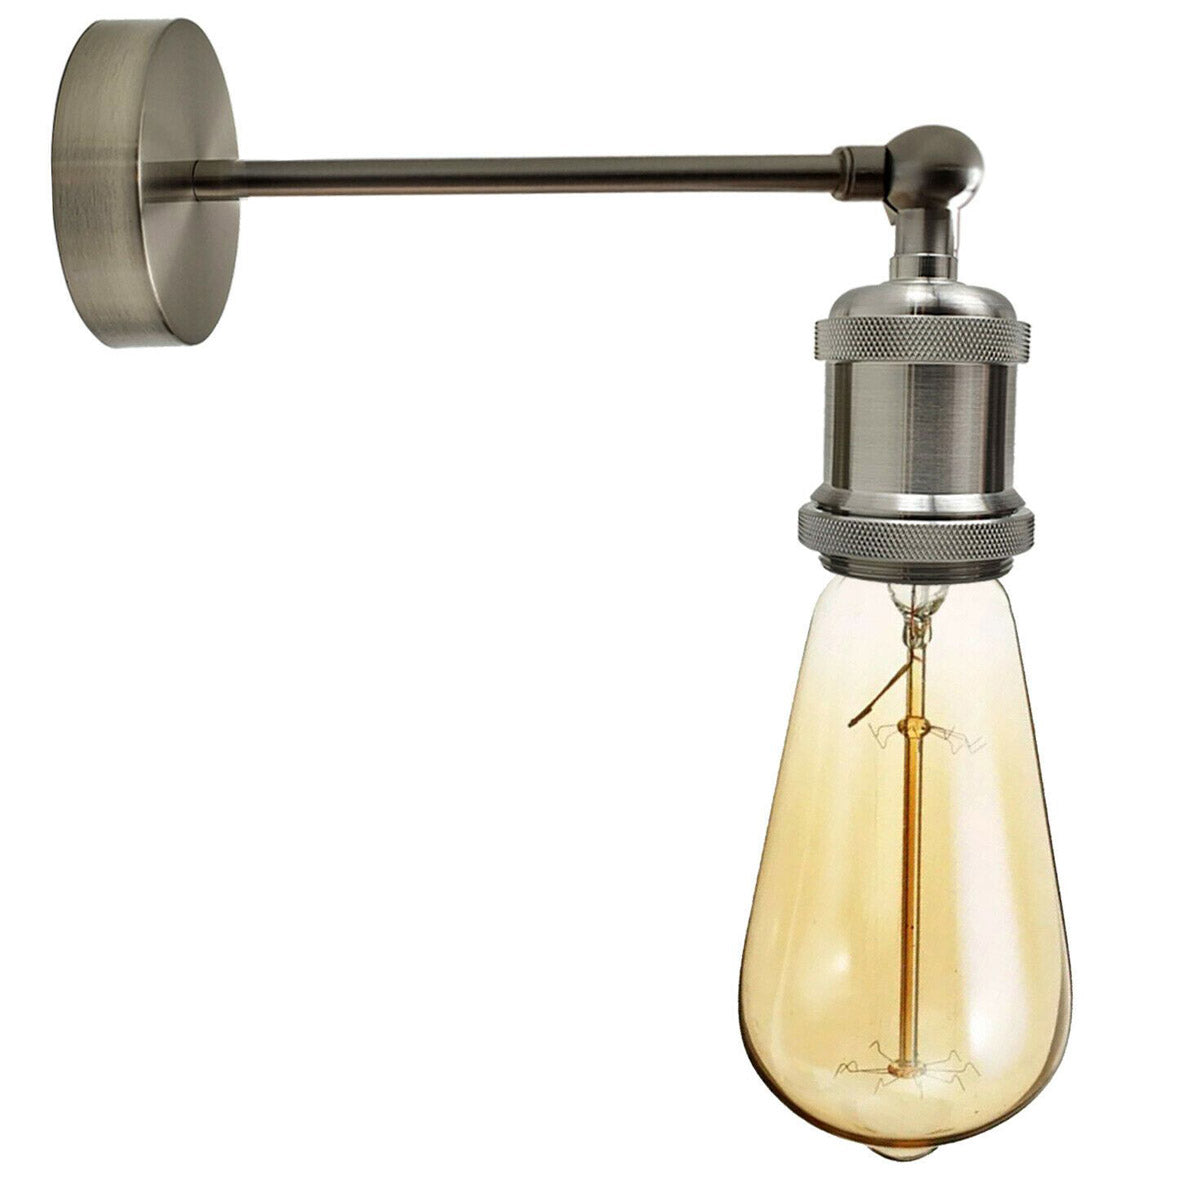 Billede af Industriel satin nikkel retro justerbare væglamper vintage stil lampetlampe fitting kit